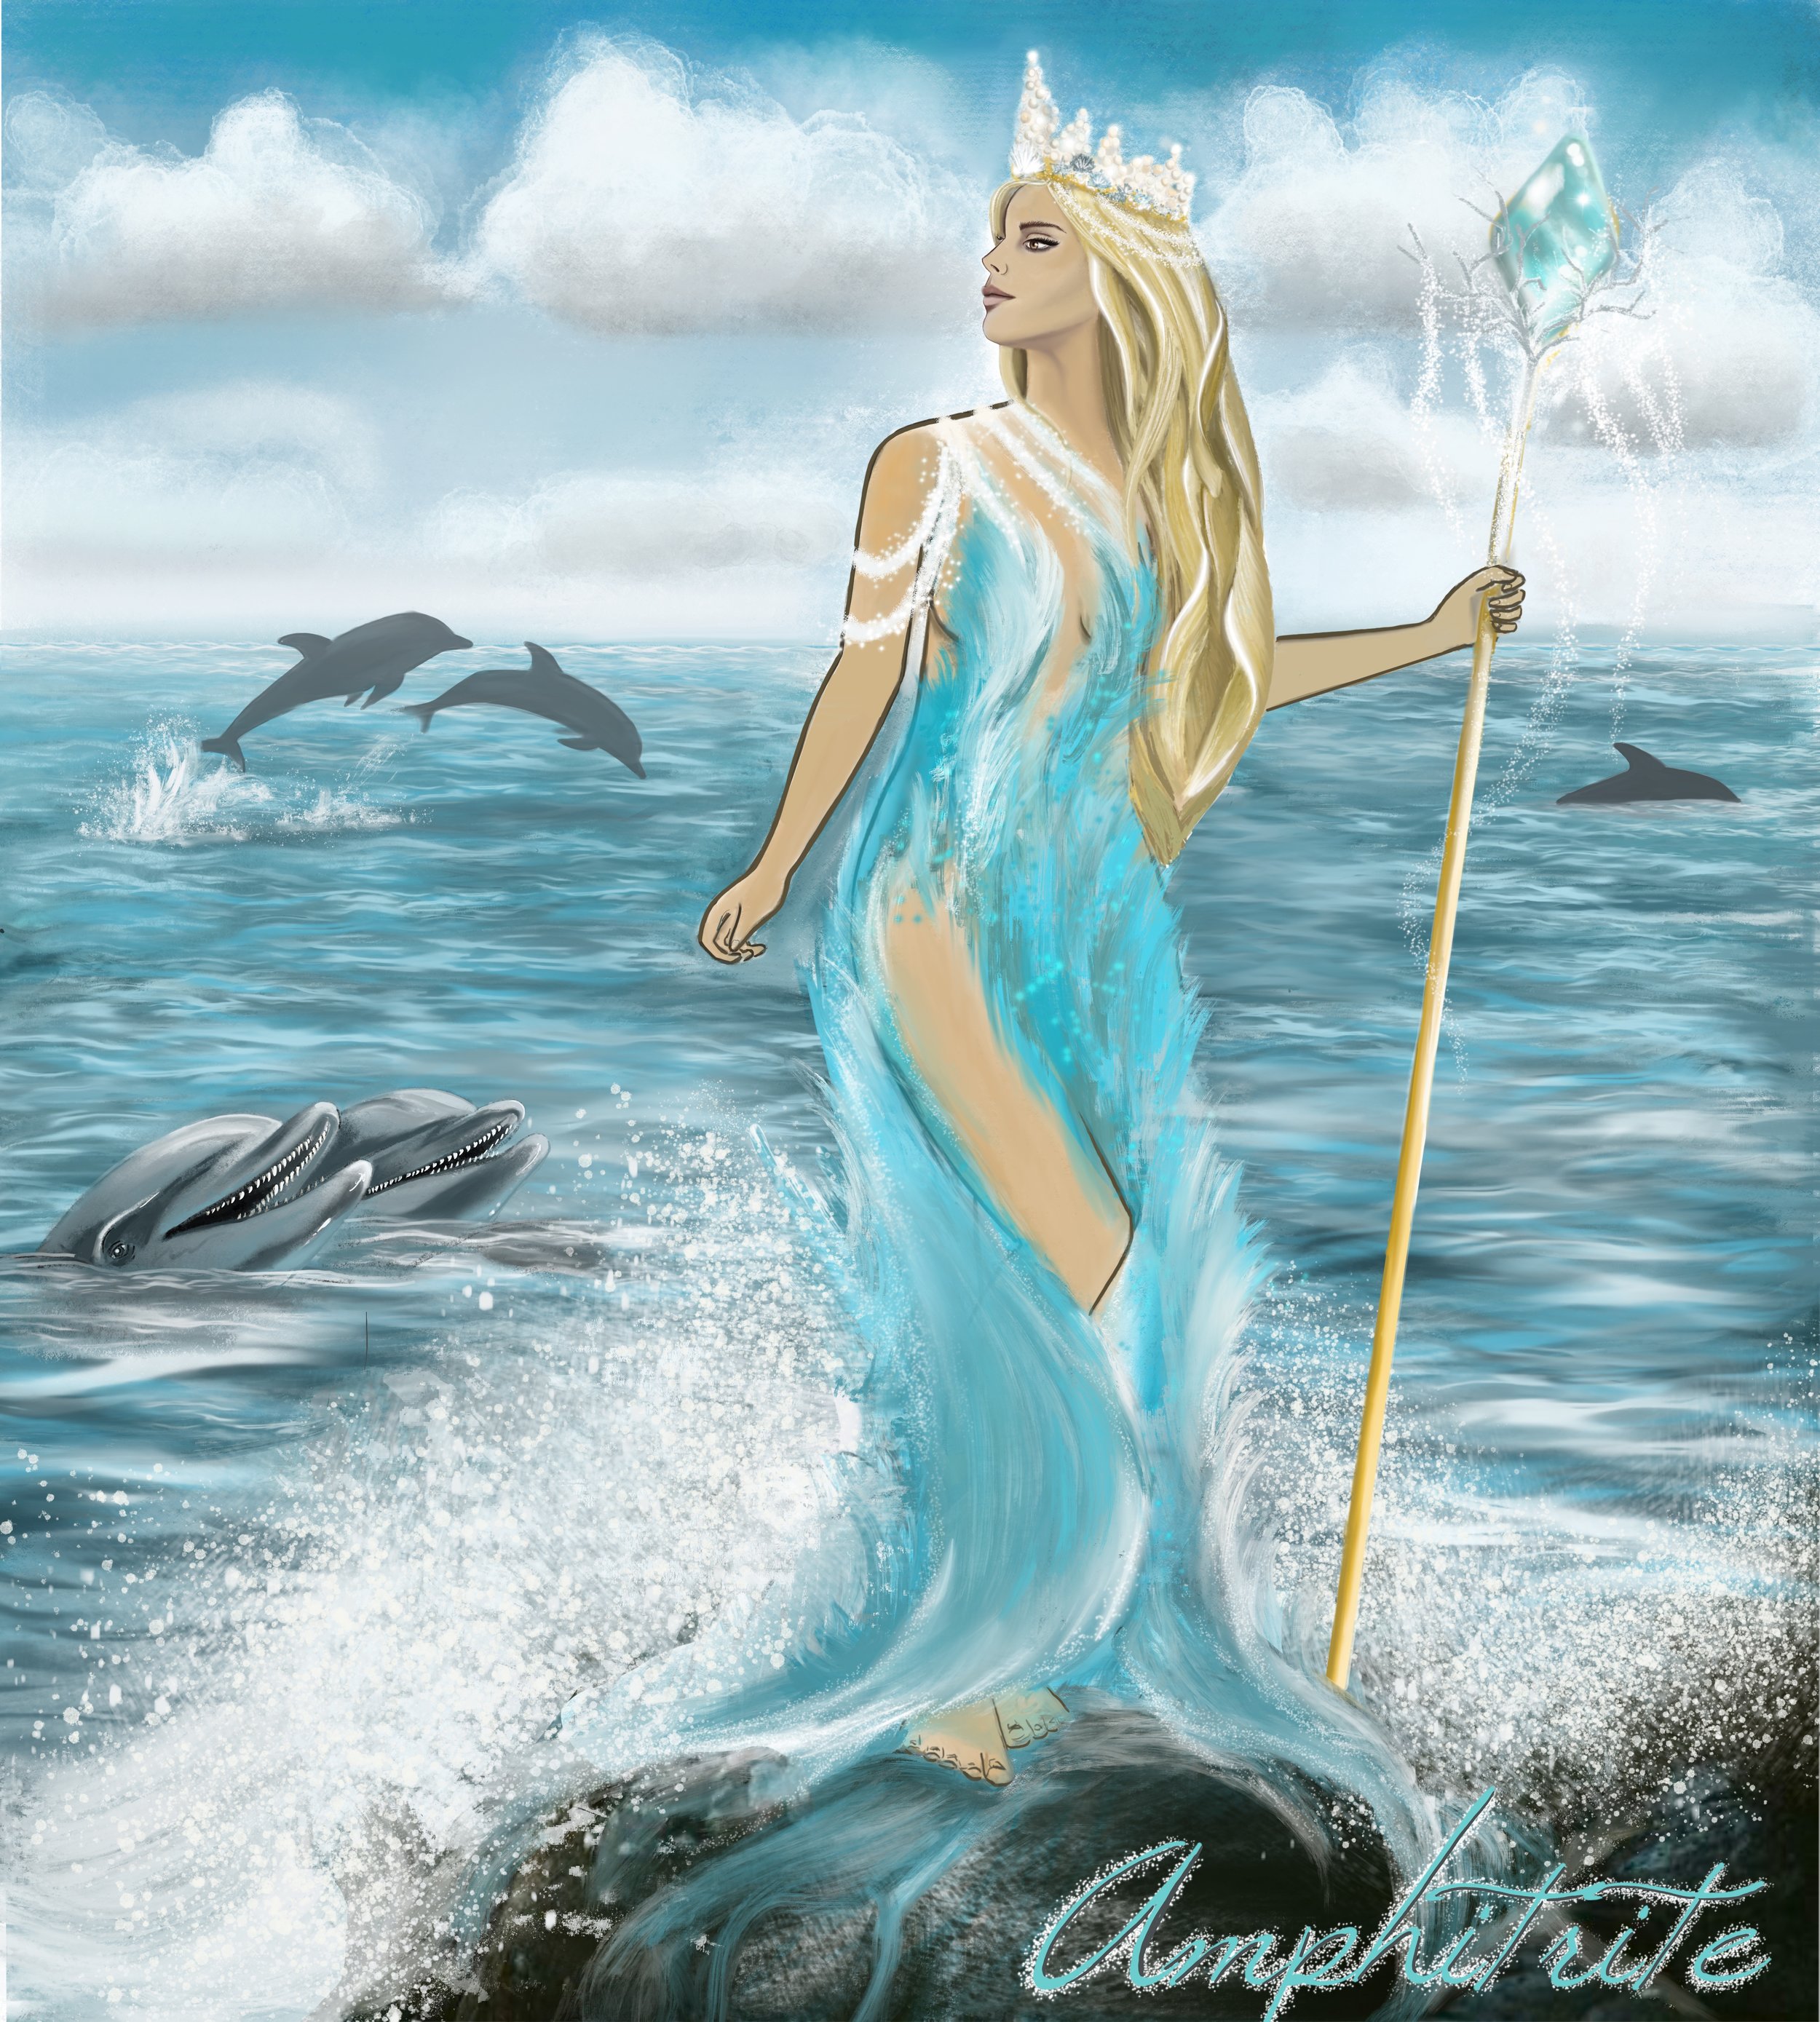 Goddess of the sea and wife of Poseidon.